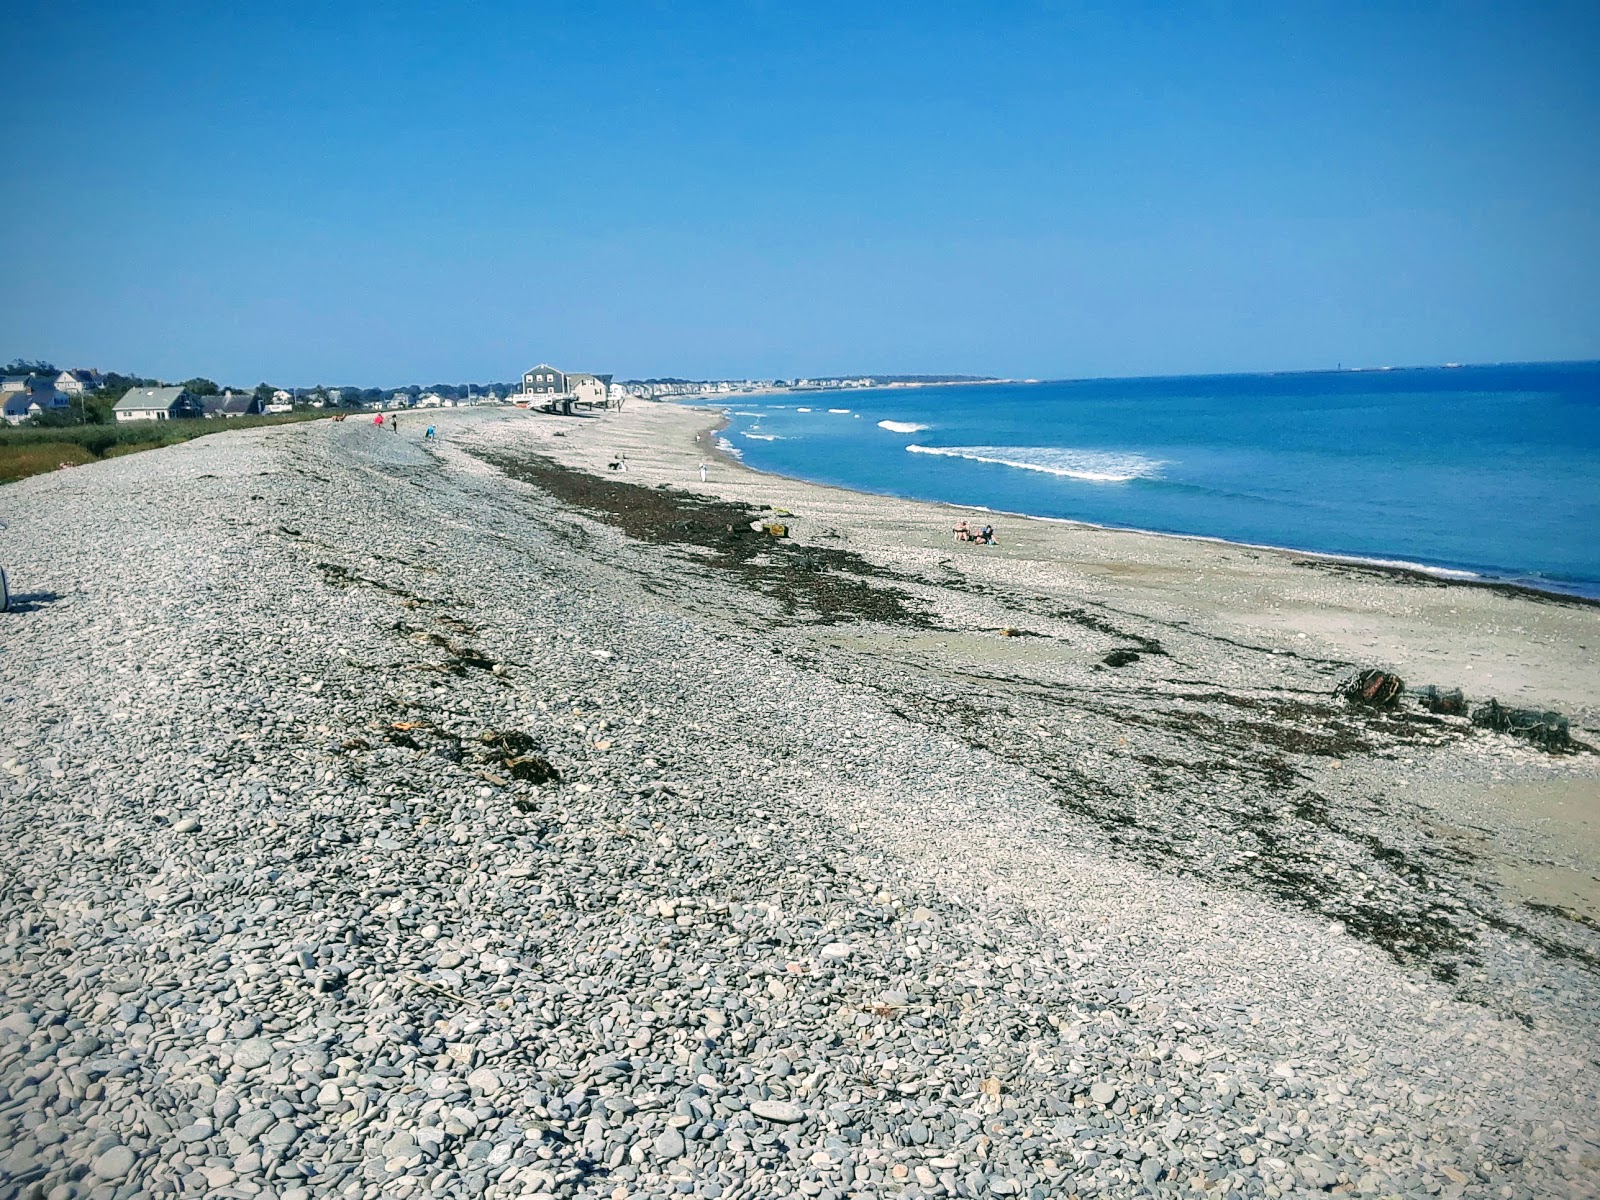 Zdjęcie Egypt Beach z powierzchnią turkusowa czysta woda